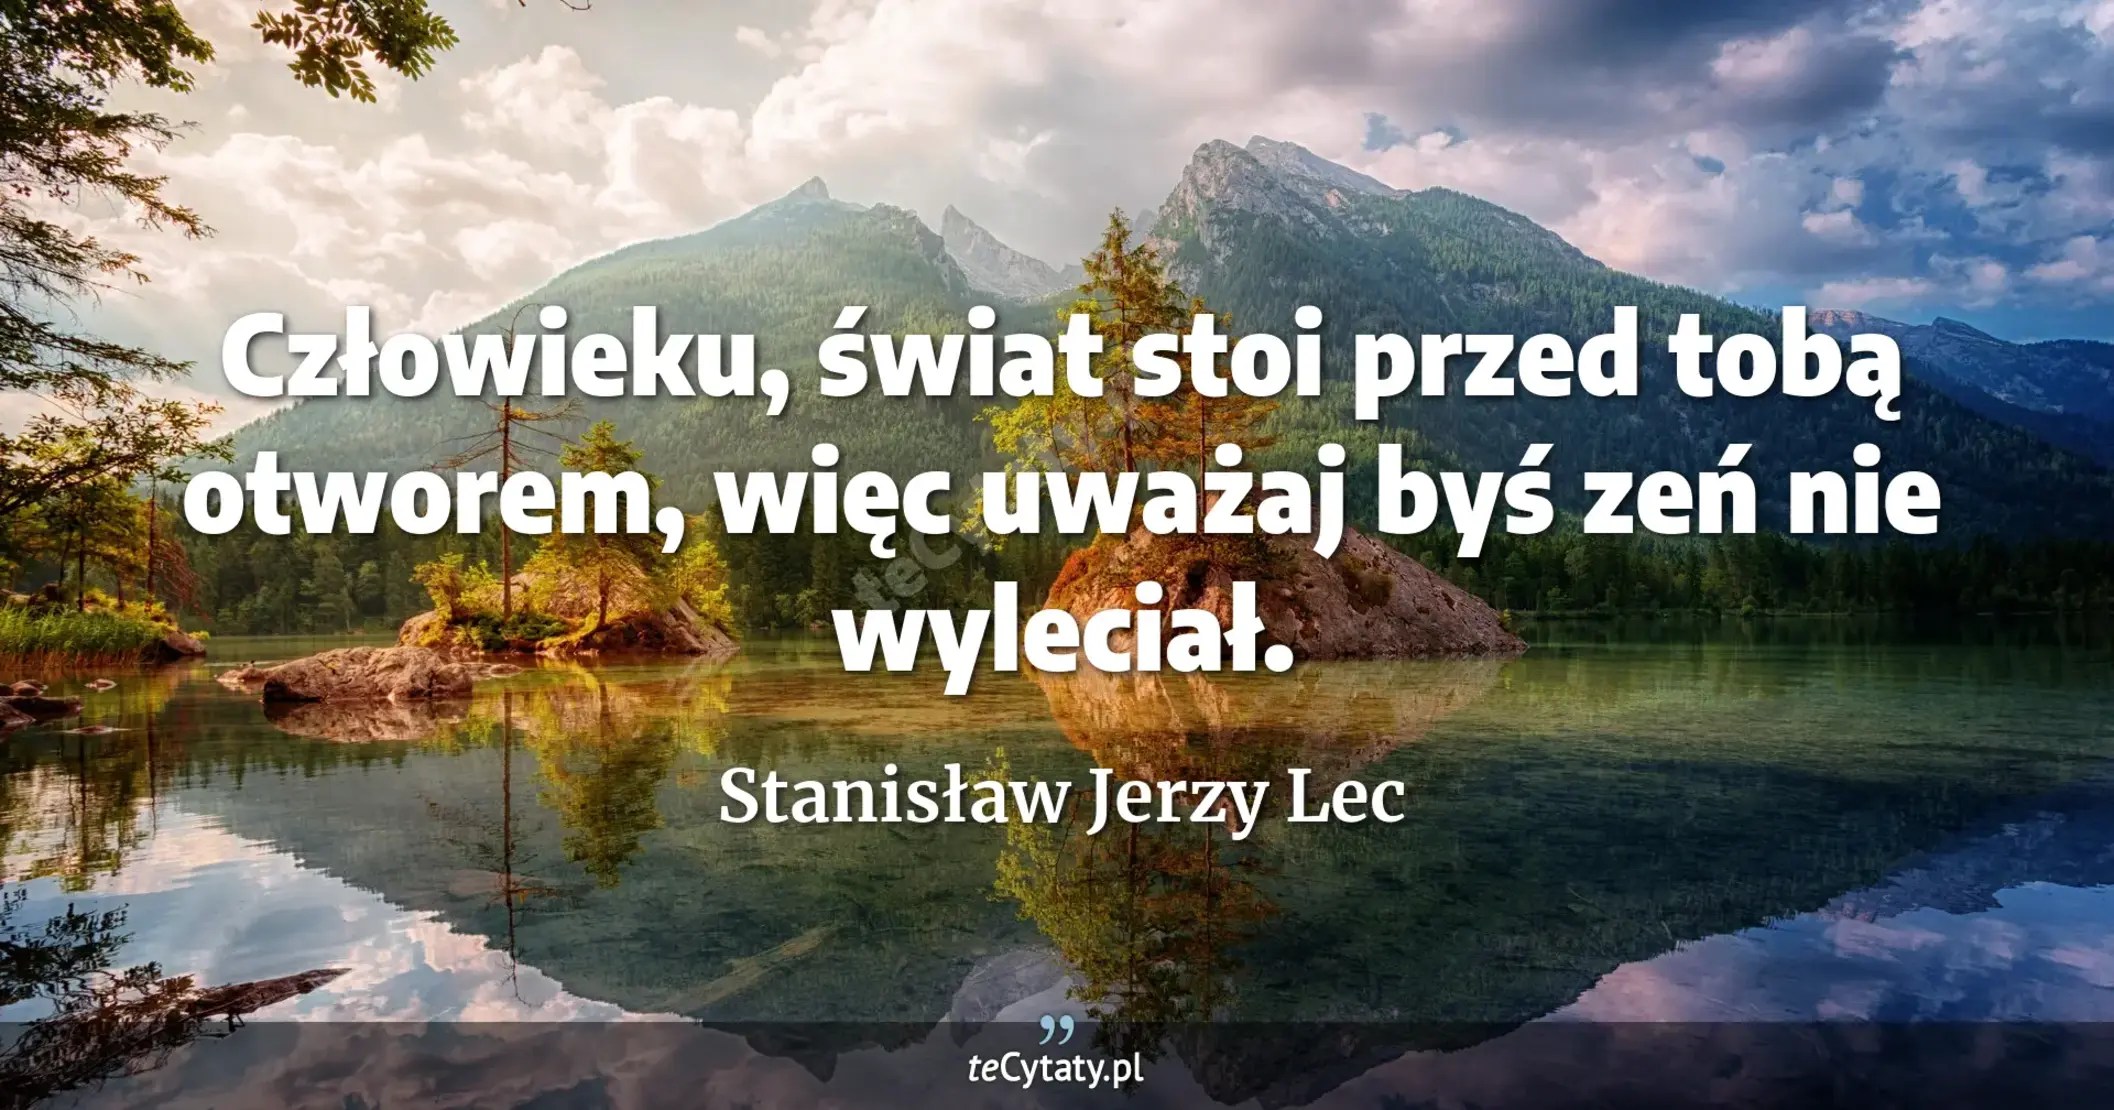 Człowieku, świat stoi przed tobą otworem, więc uważaj byś zeń nie wyleciał. - Stanisław Jerzy Lec